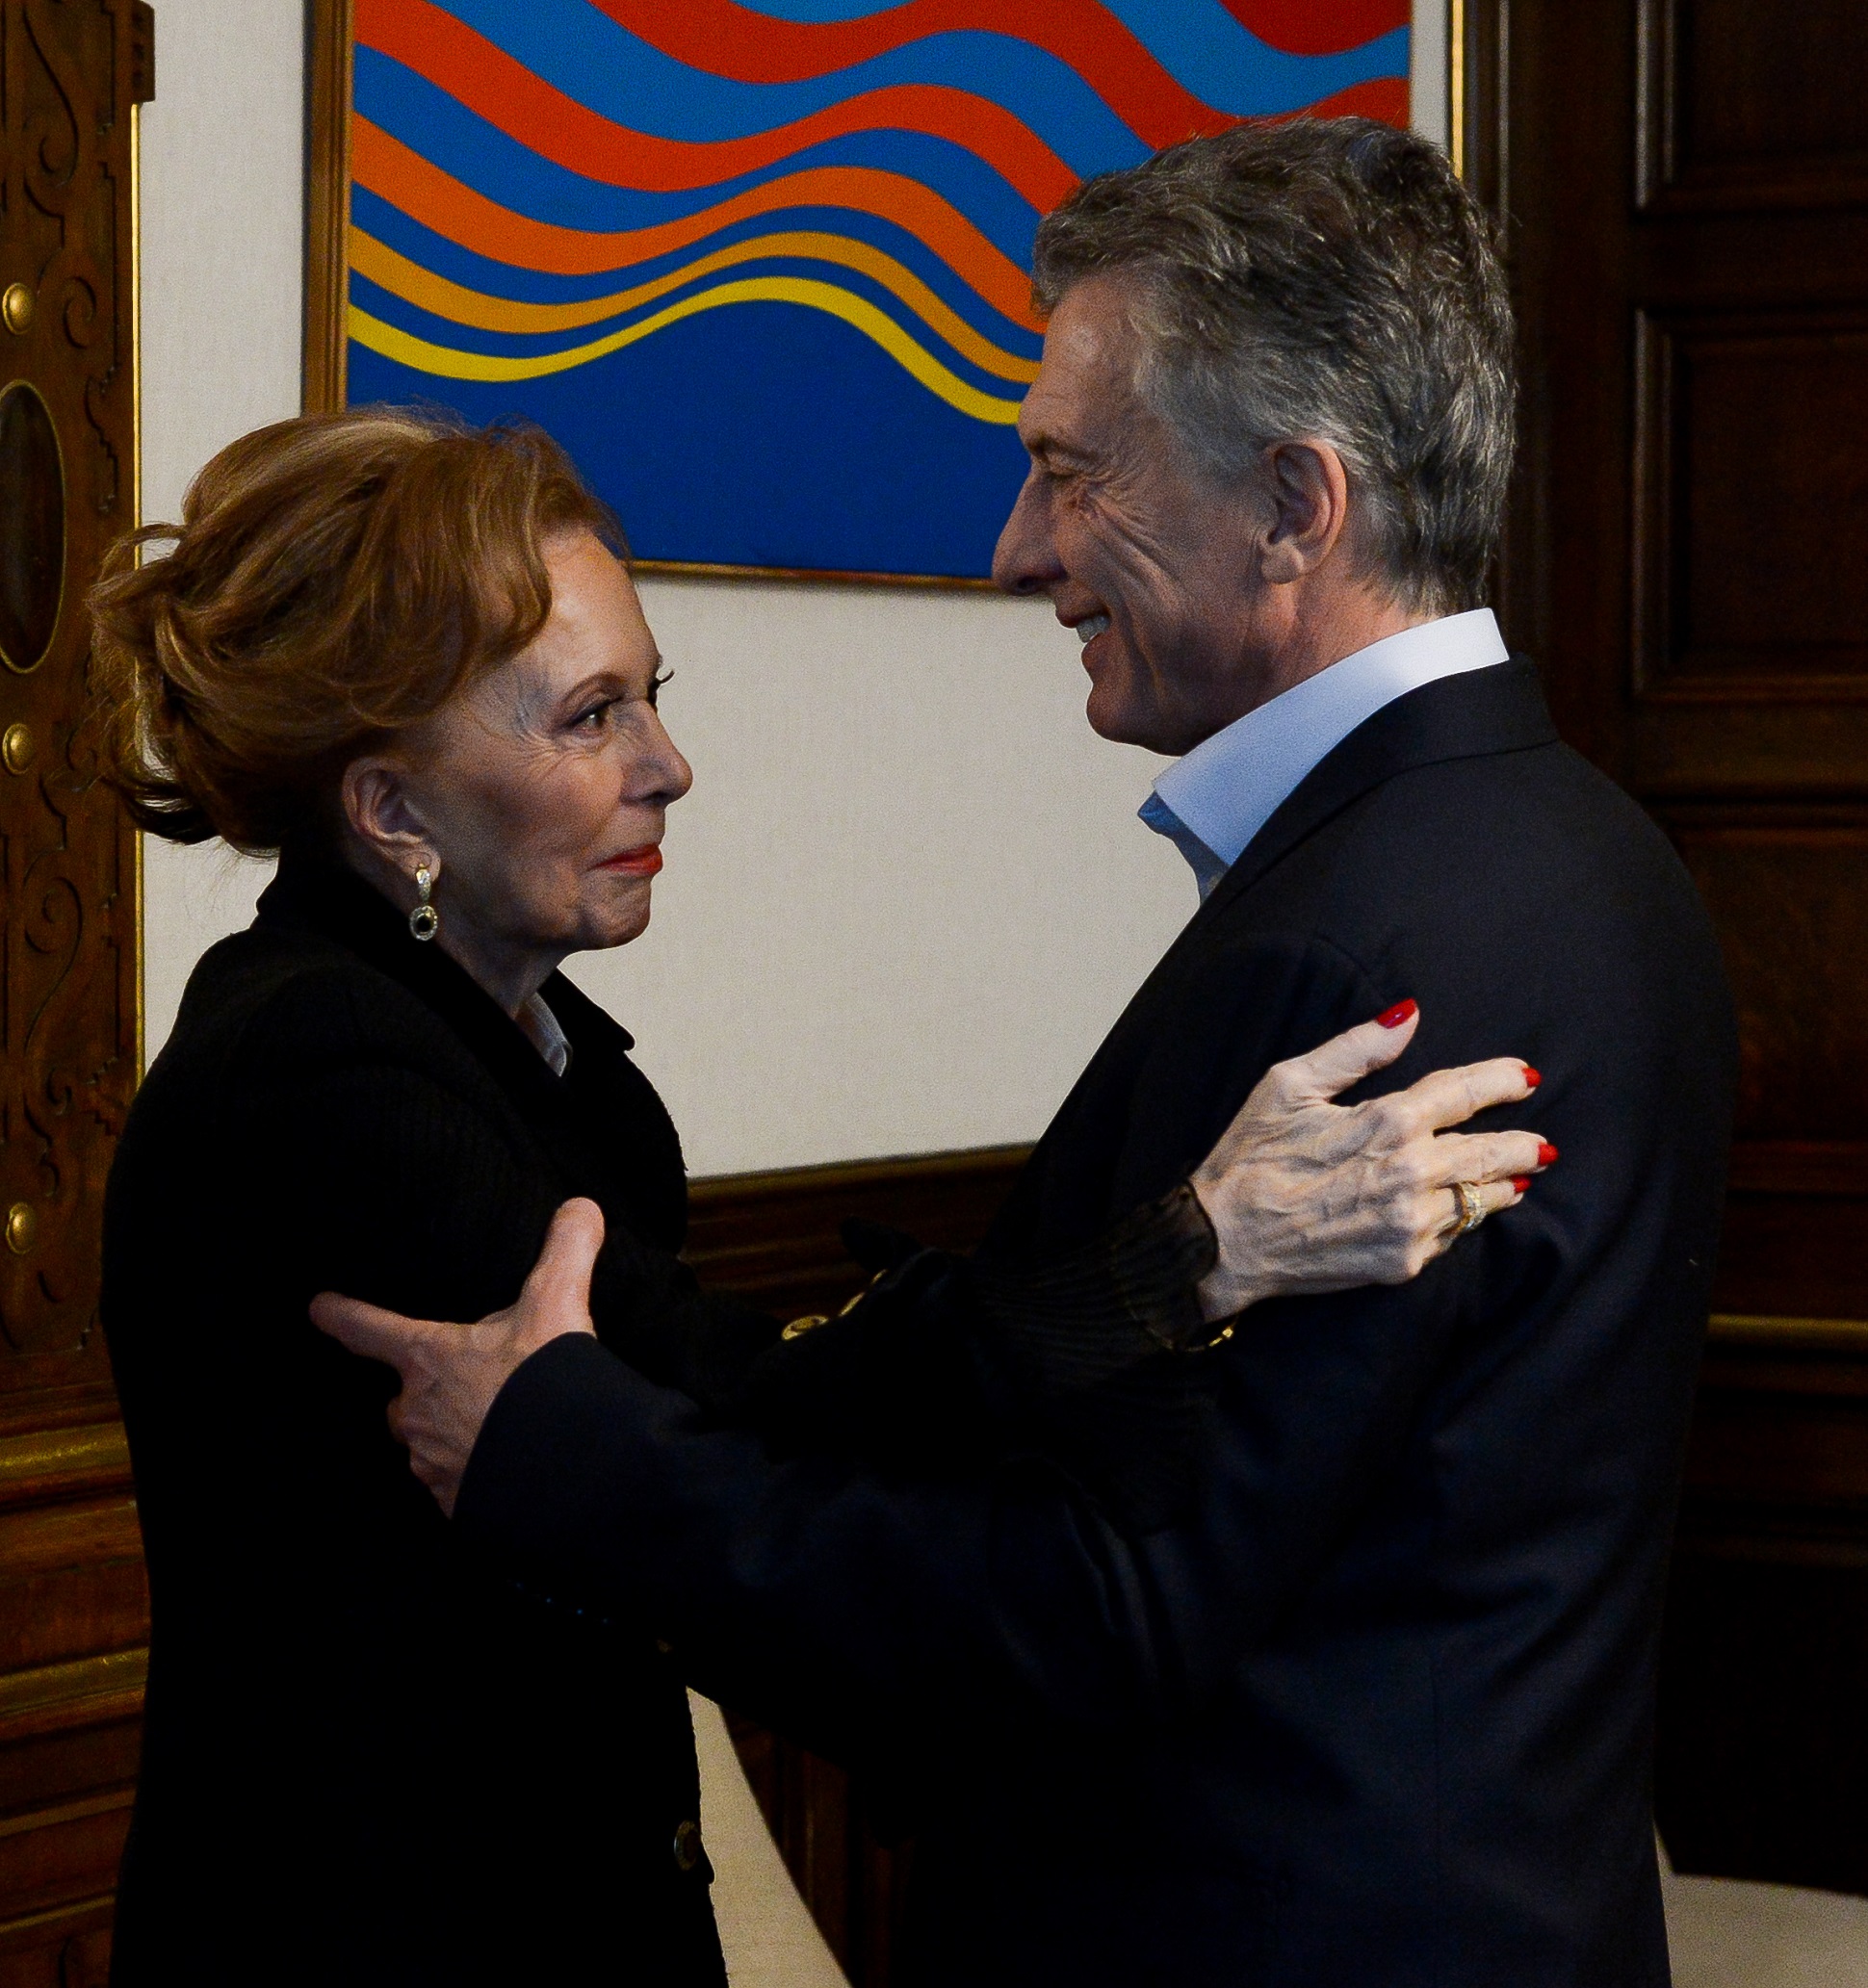 El presidente Macri recibió a Pinky en la Casa Rosada